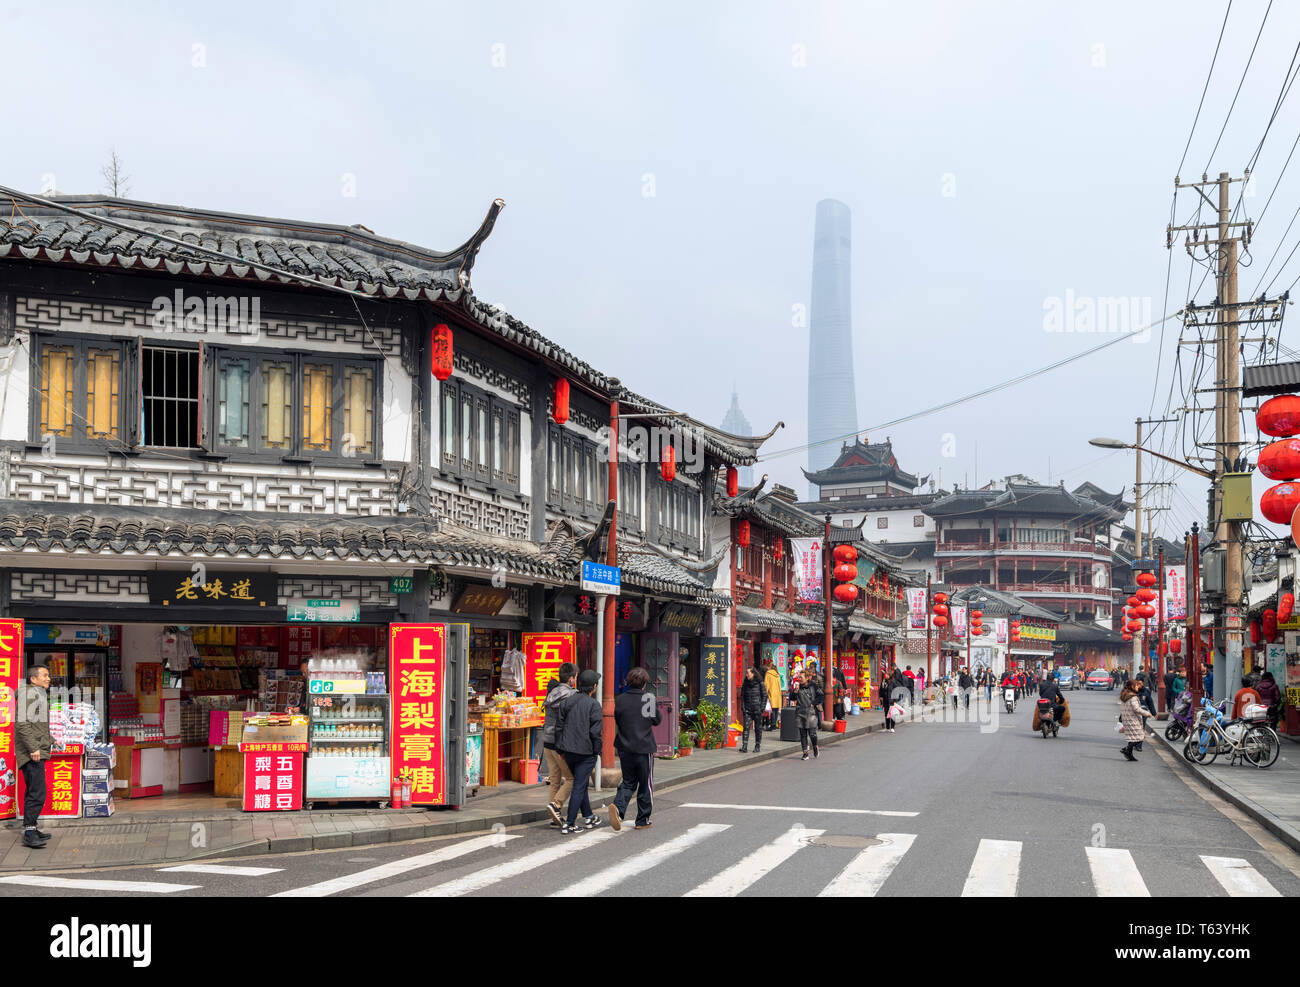 Traditionelle Geschäfte und Restaurants auf der mittleren Fangbang Road mit dem Shanghai Tower, nur durch die Luftverschmutzung sichtbar, alte Stadt, Shanghai, China Stockfoto